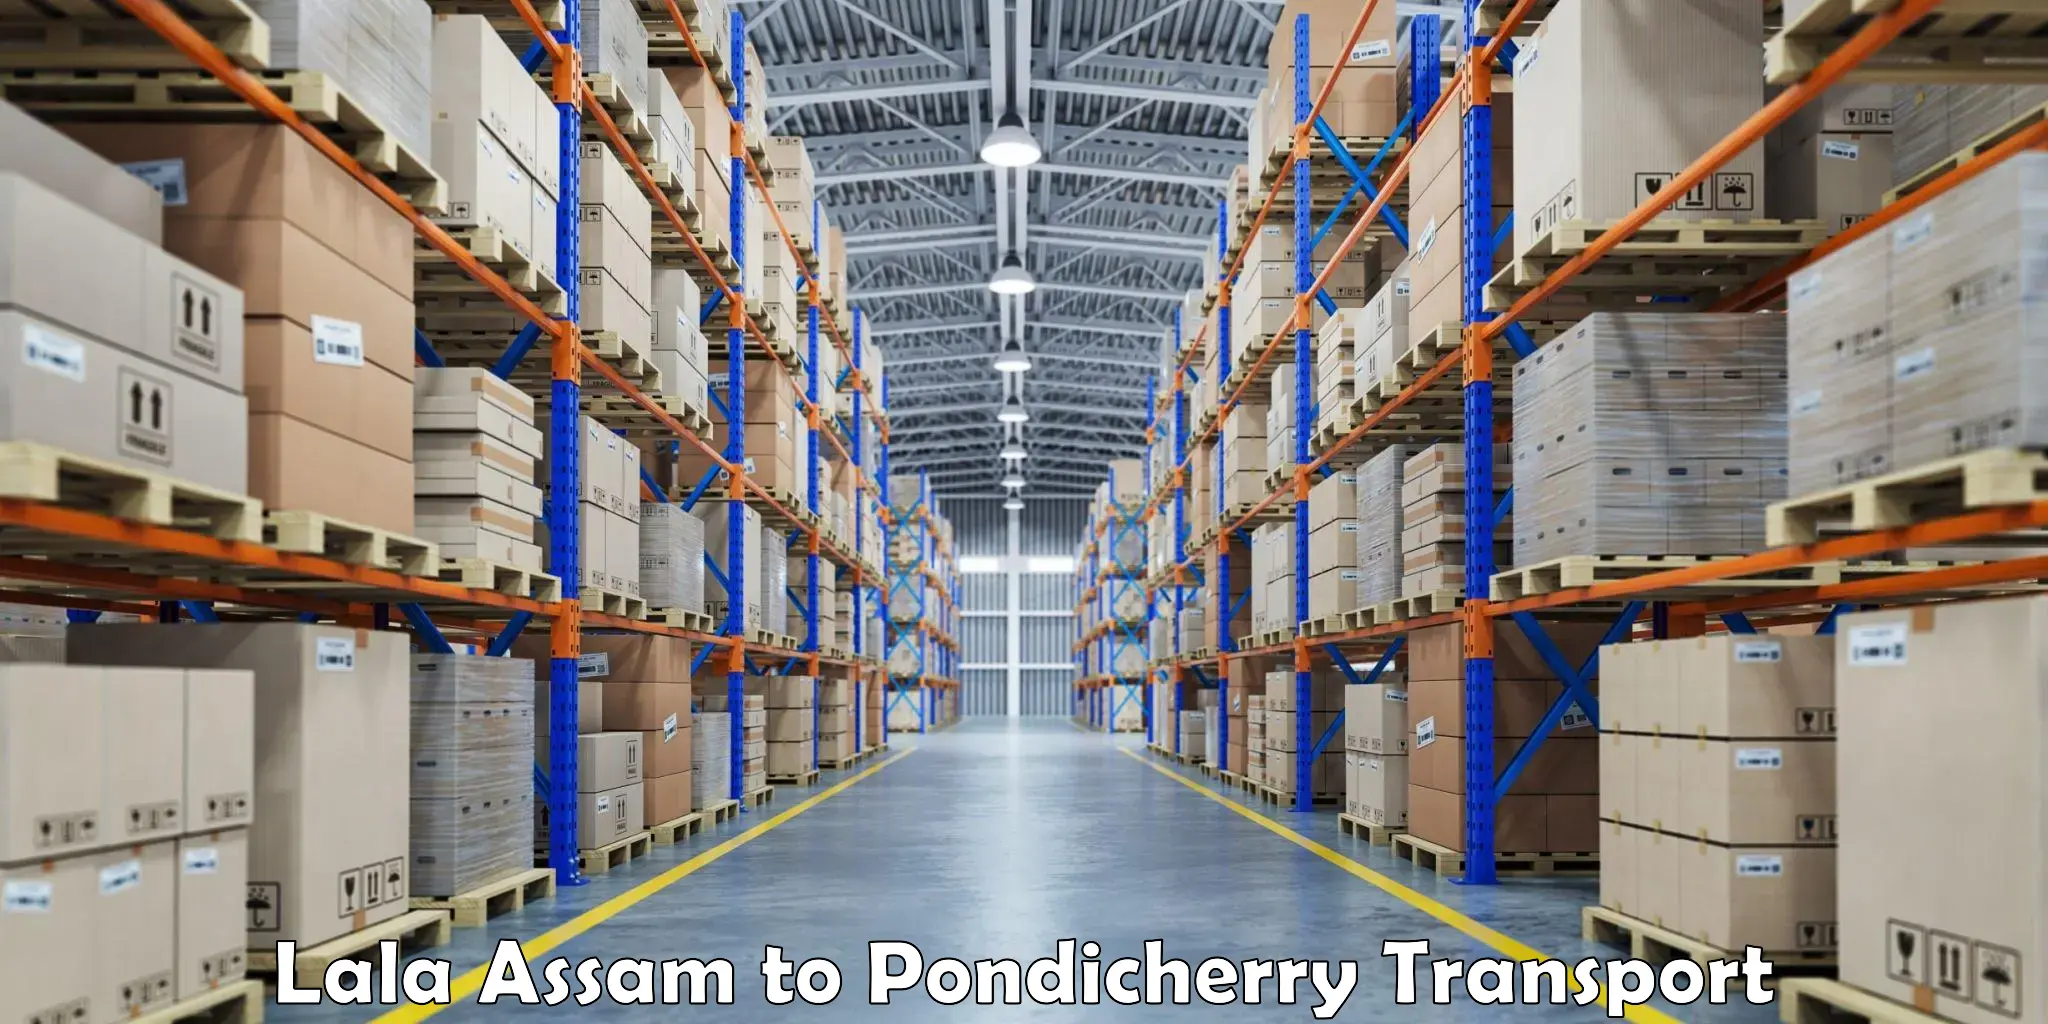 Nearest transport service Lala Assam to Pondicherry